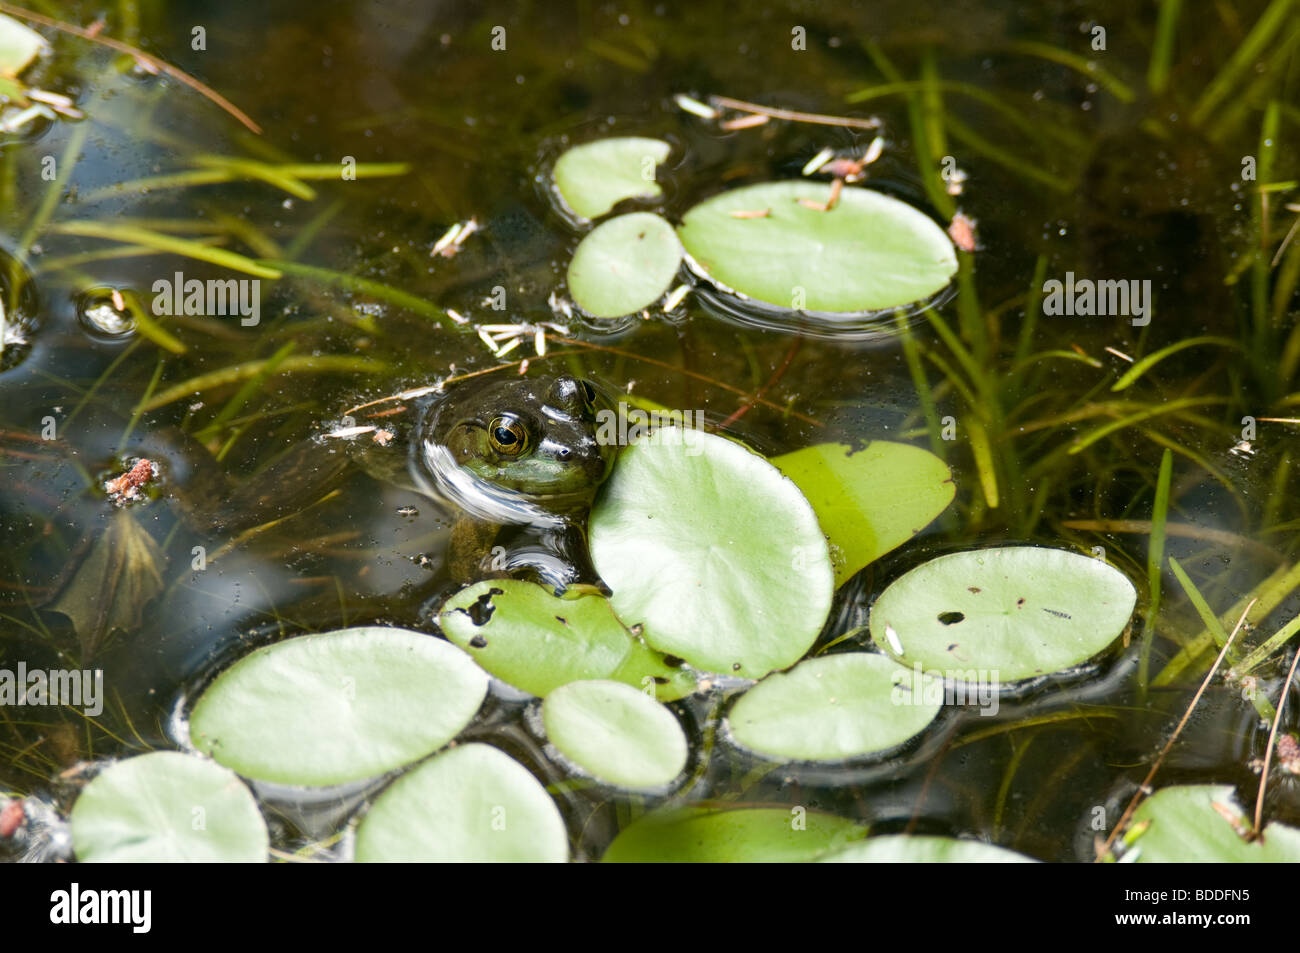 Rana Verde flotando en pastillas de Lilly Foto de stock